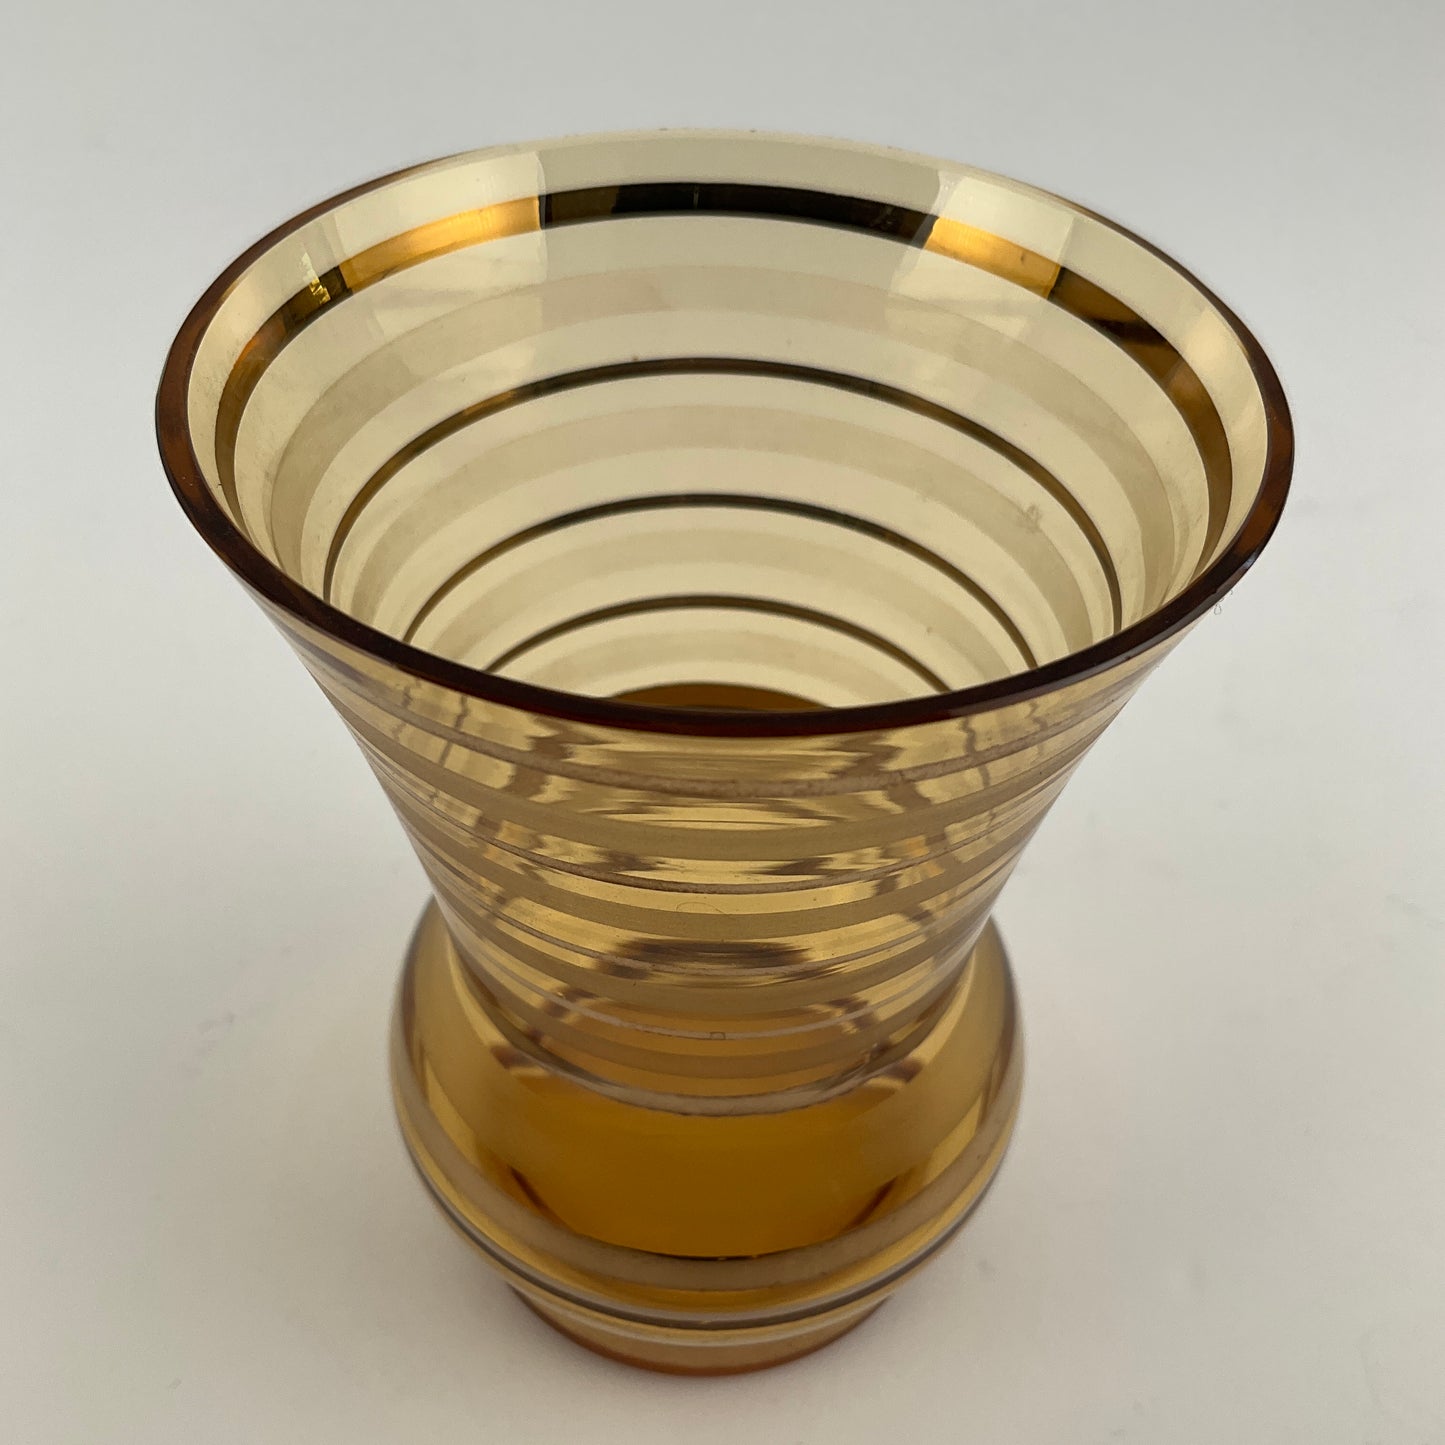 7 Piece Czech Amber Glass Water Set